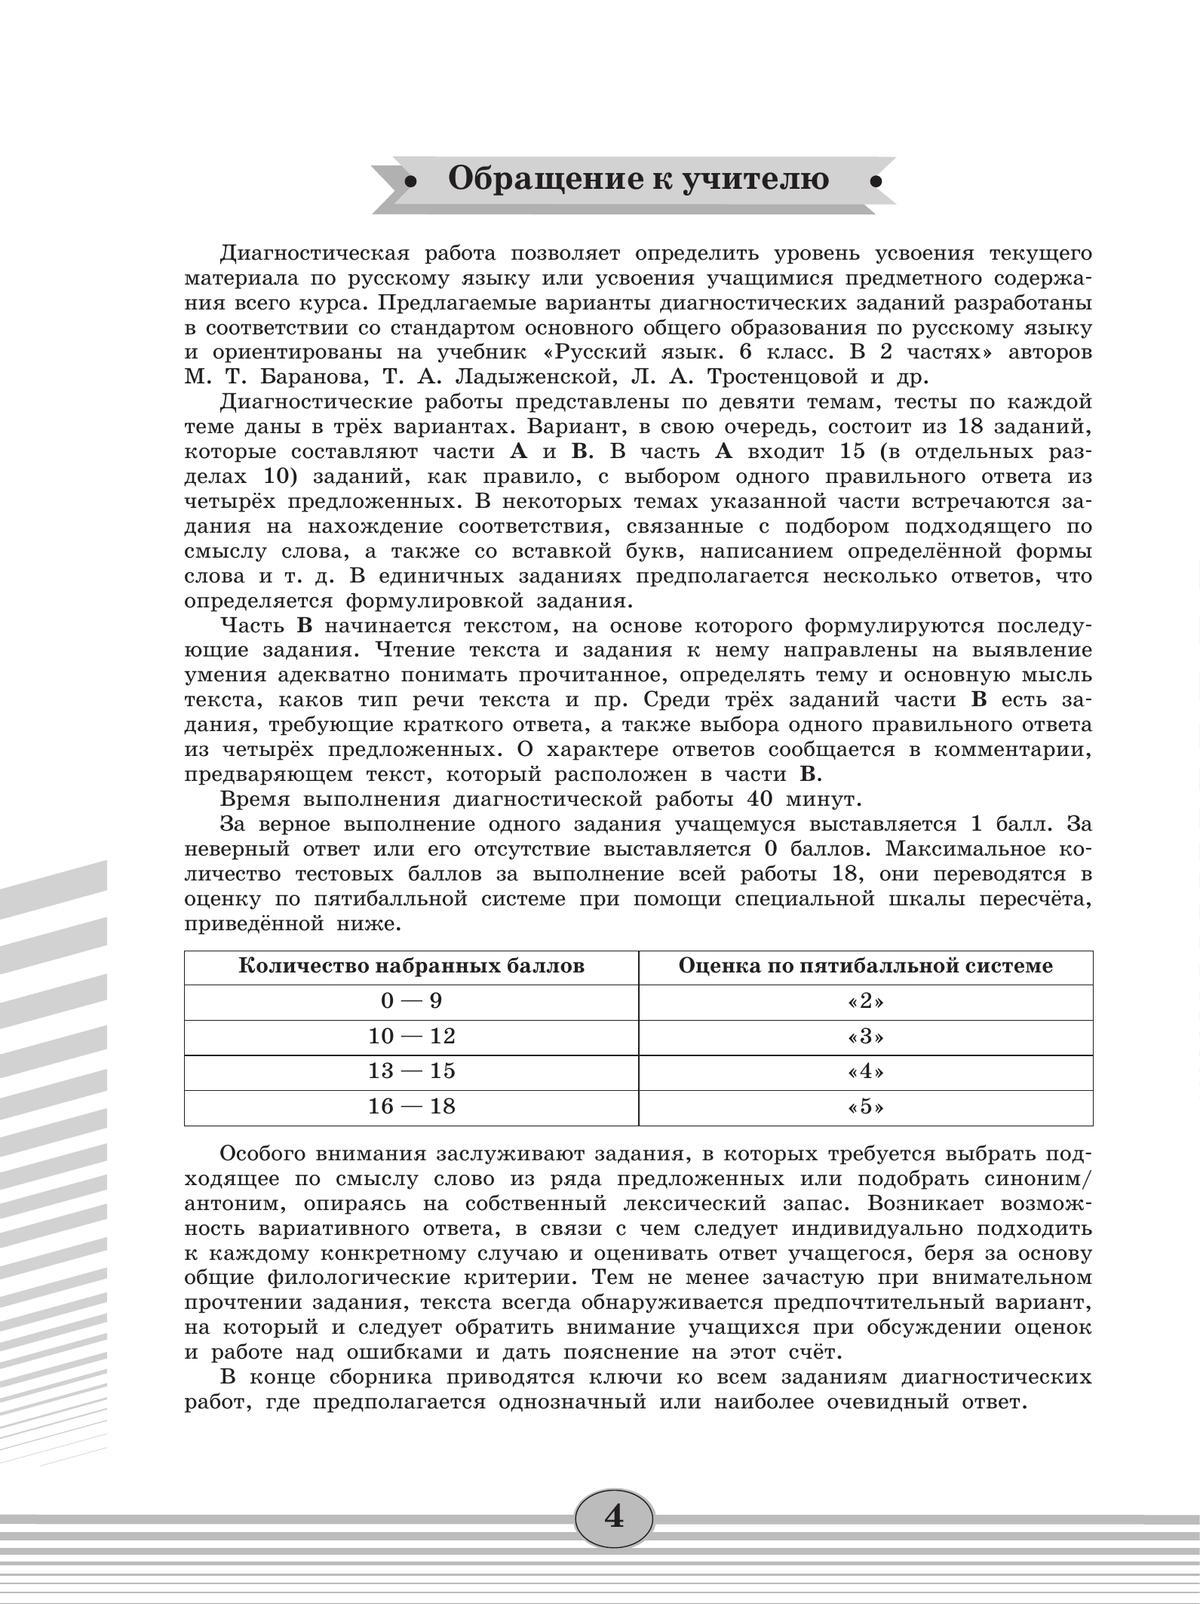 Русский язык. Диагностические работы. 6 класс 5